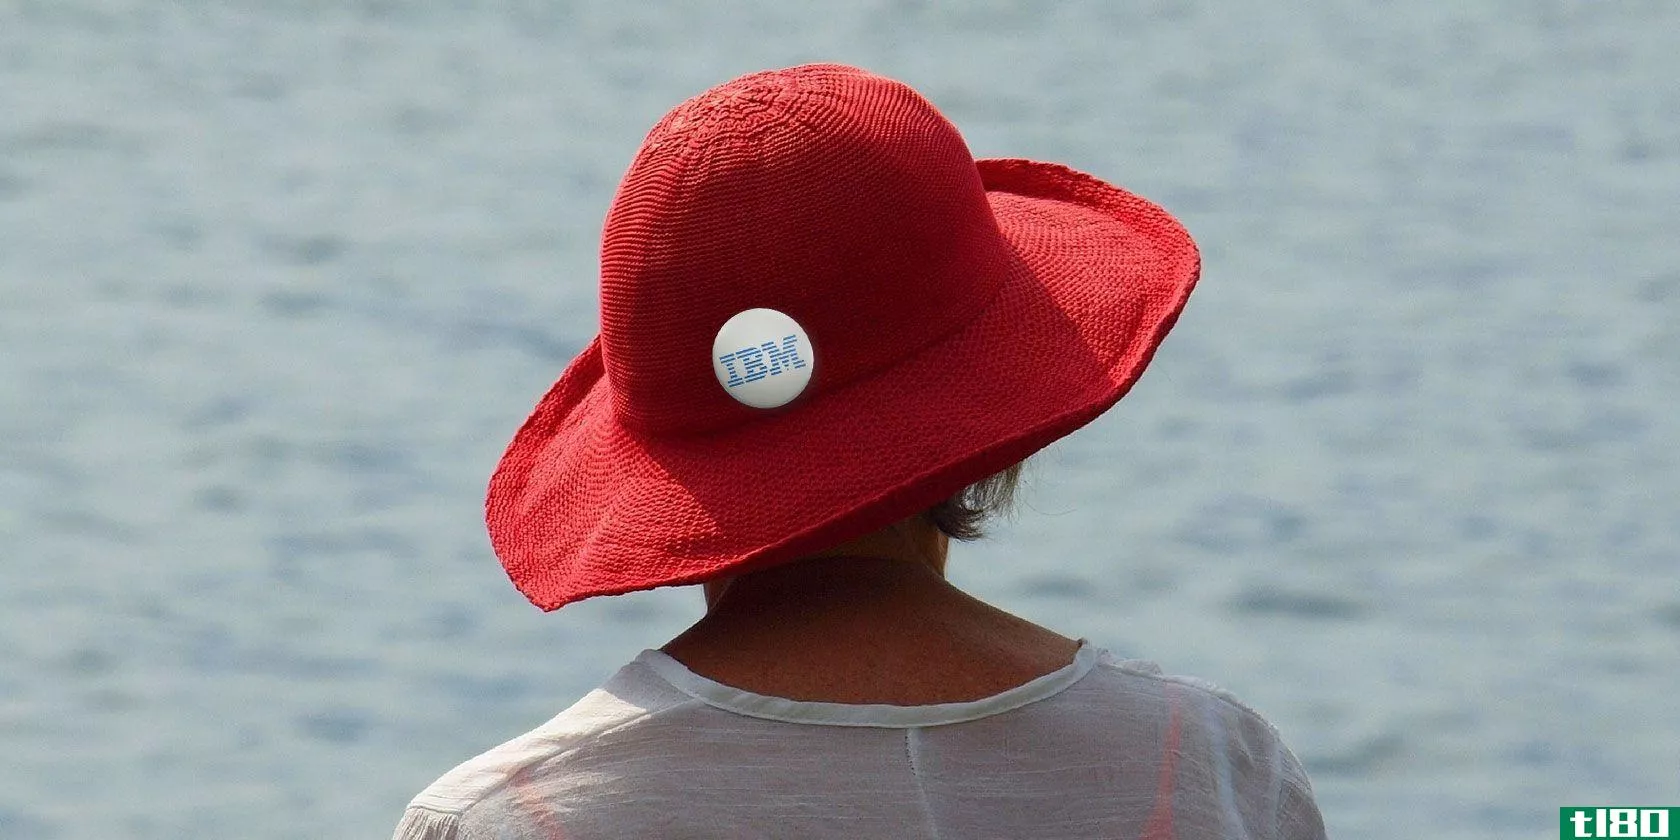 ibm收购red hat：这对开源意味着什么？